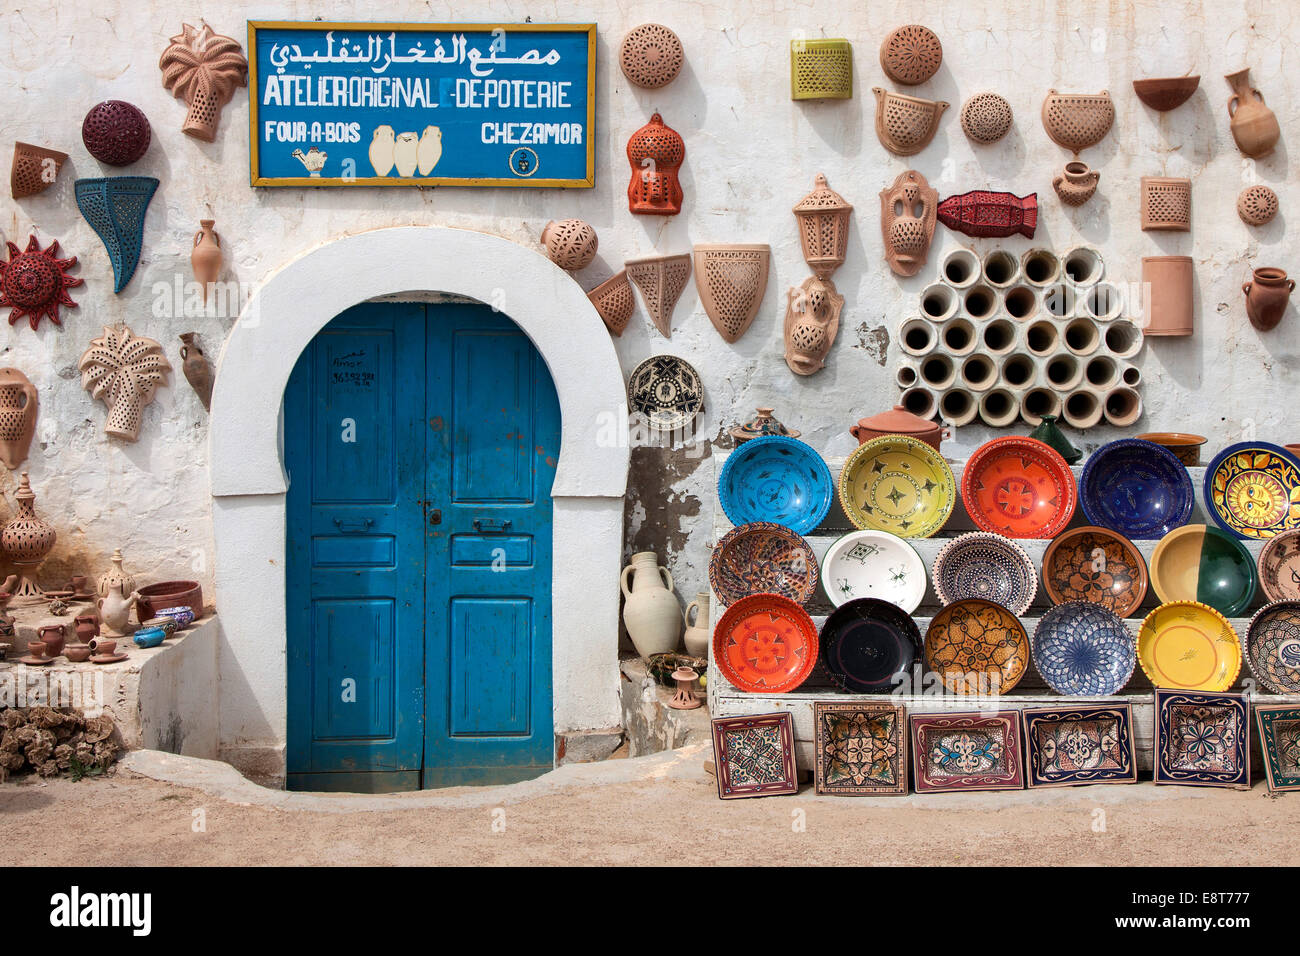 Ceramics shop, pottery goods, Guellala, Djerba, Tunisia Stock Photo